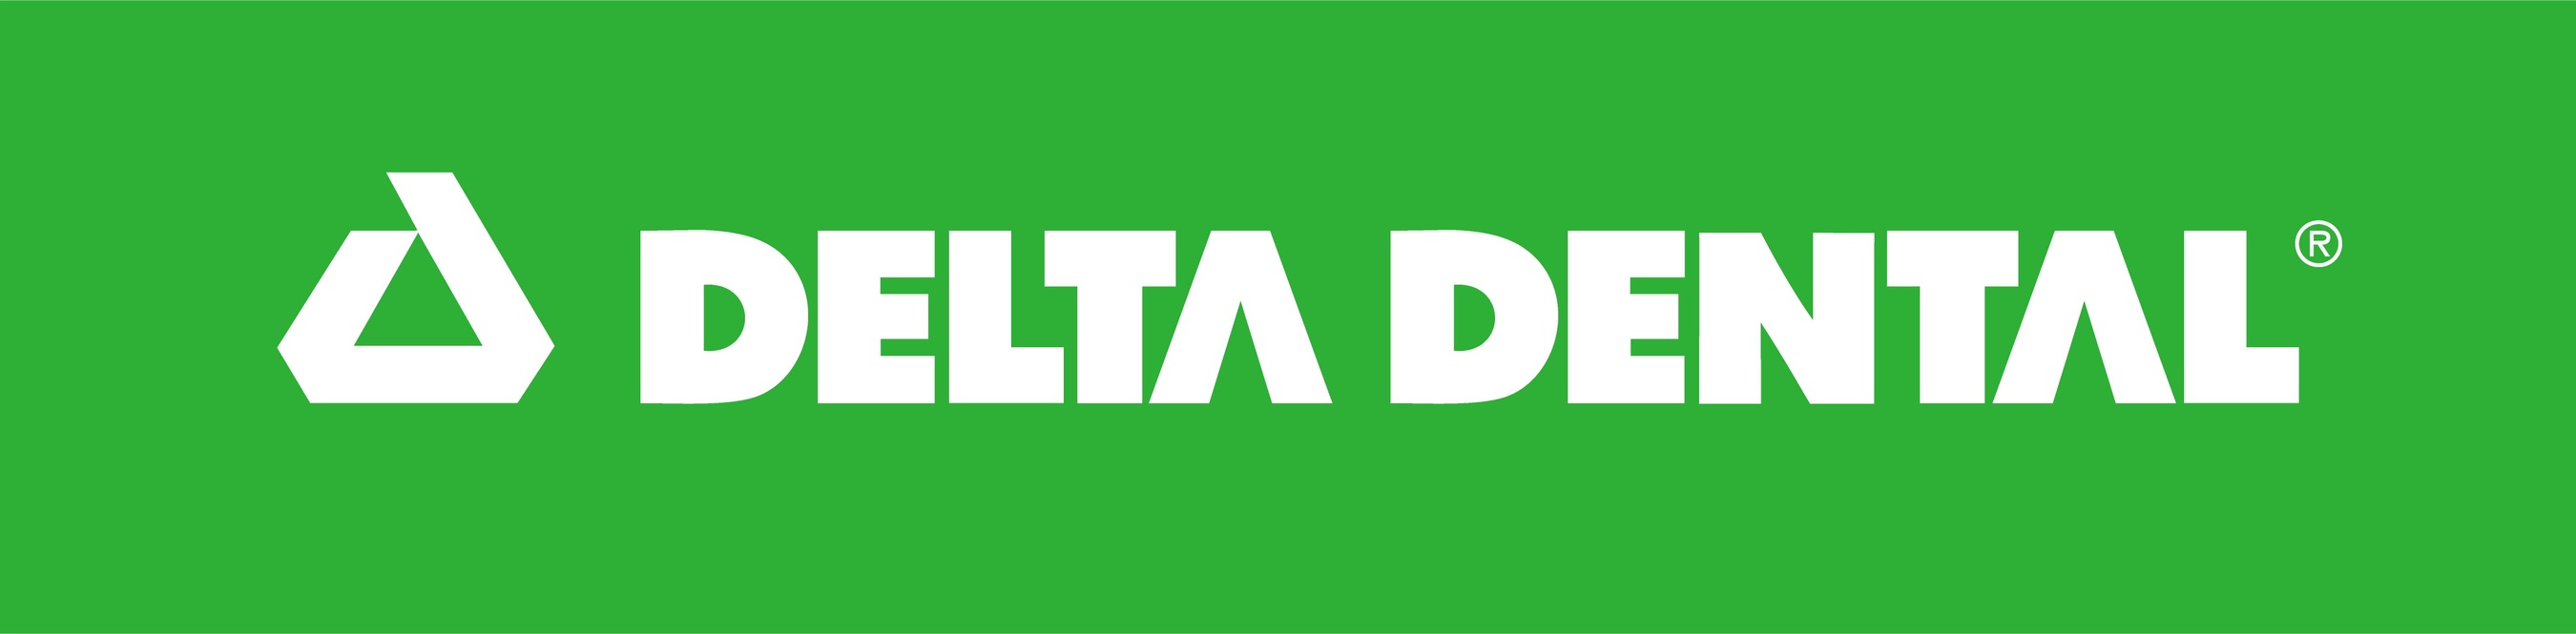 Delta Dental Logo (PRNewsFoto/Delta Dental Plans Association) (PRNewsfoto/Delta Dental Plans Association)